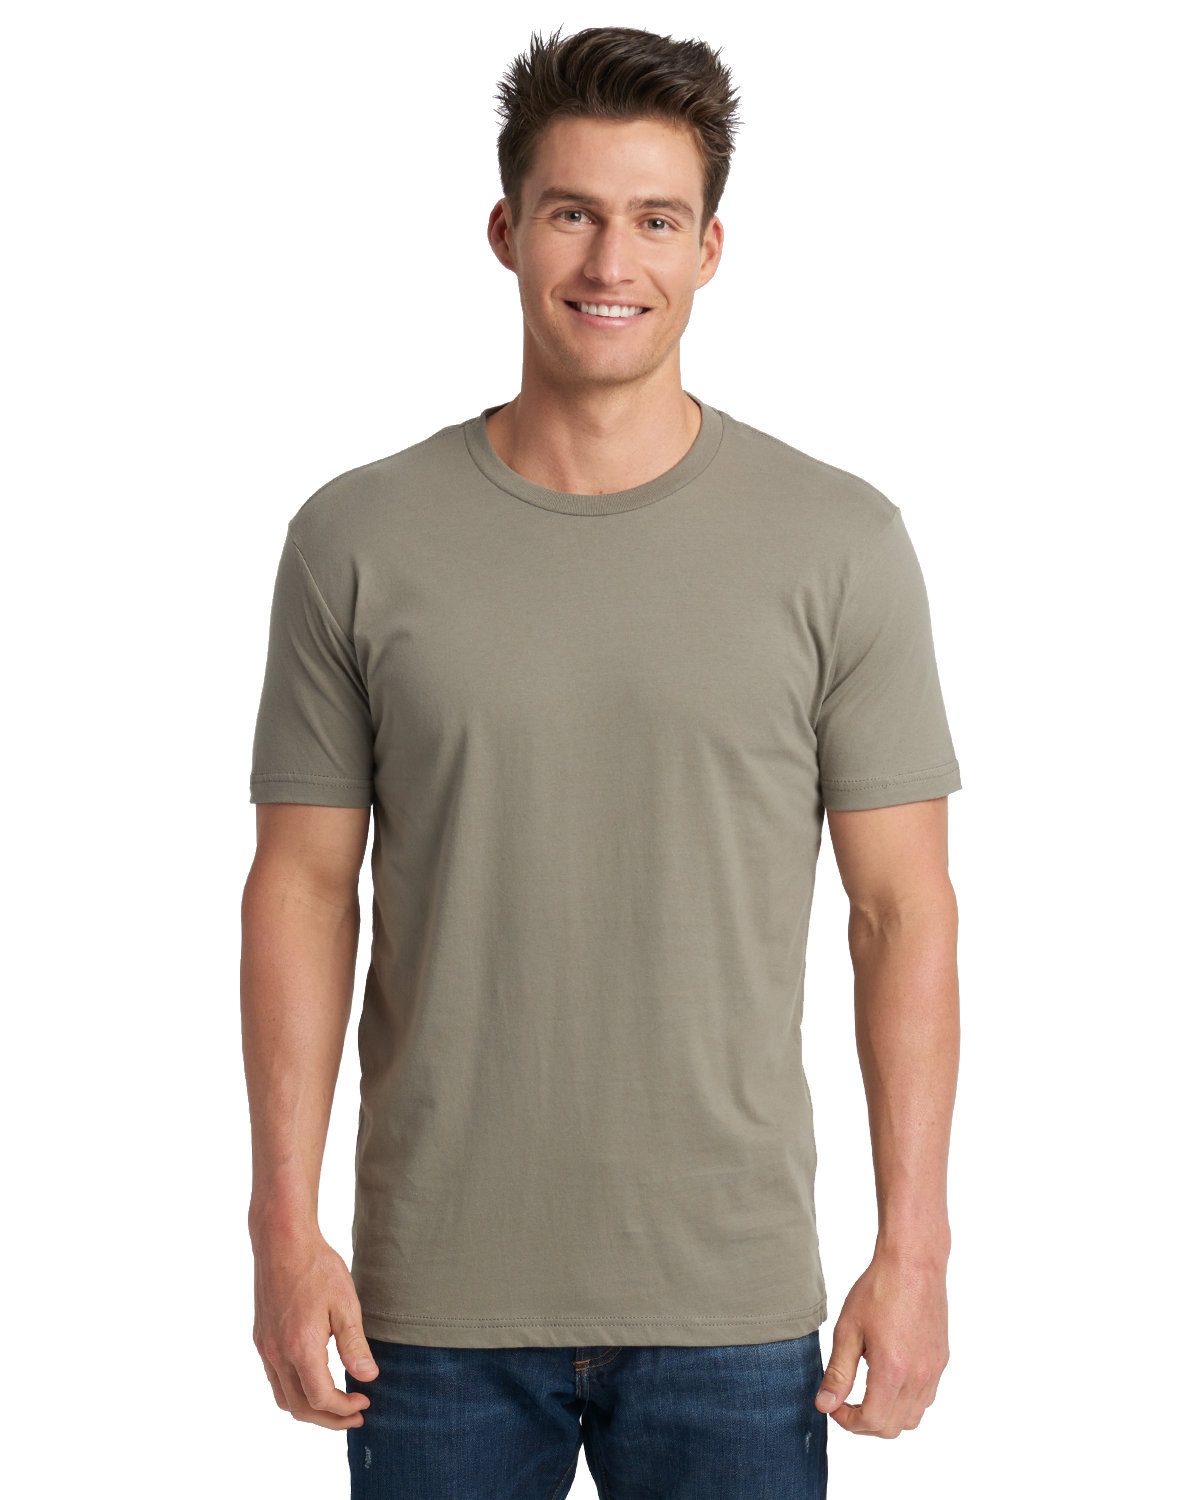 Next Level Apparel Men's Cotton Poly Crewneck T-Shirt, Classic